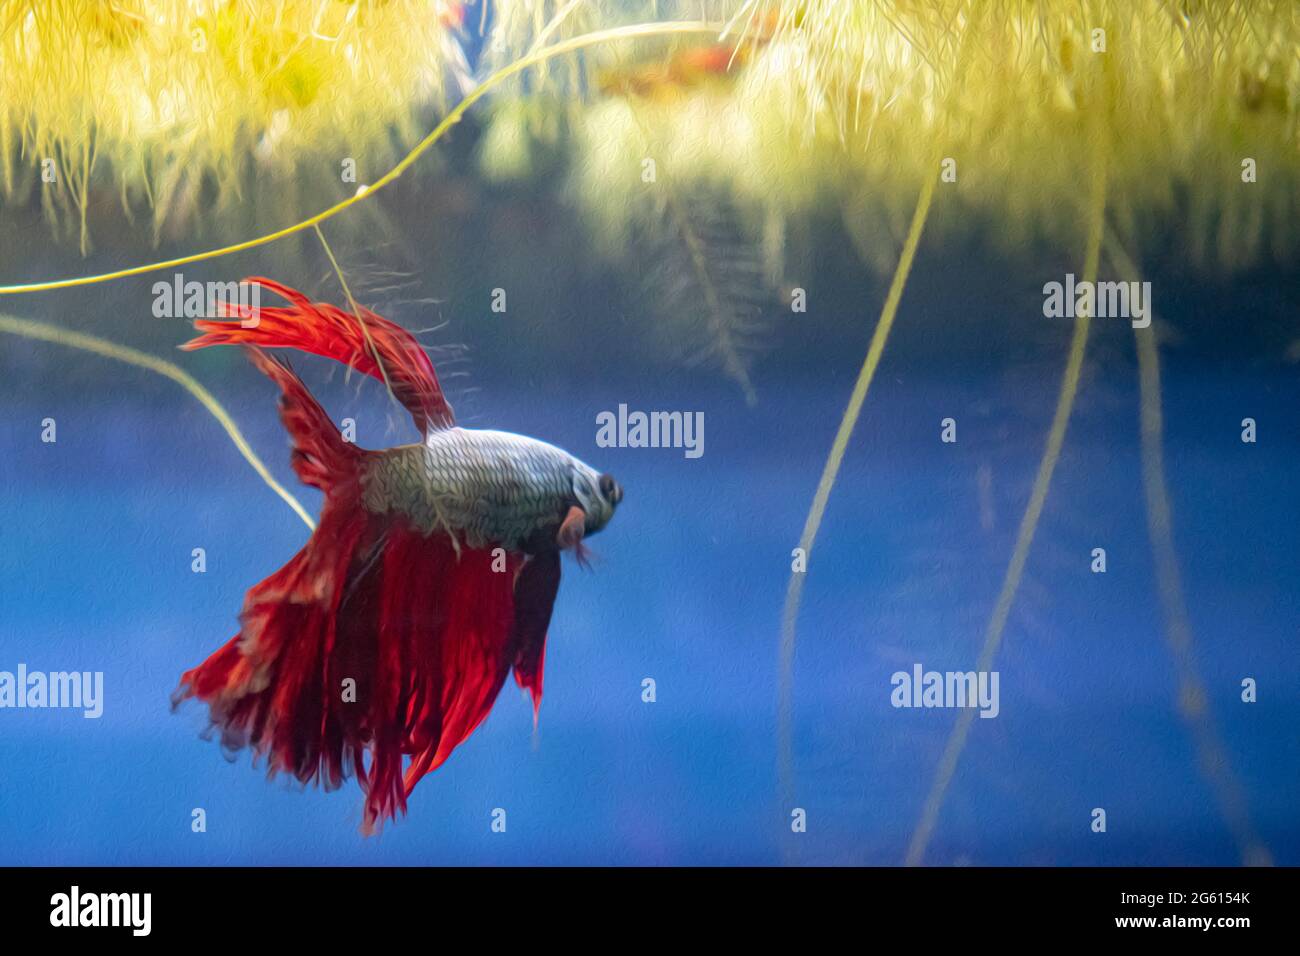 Pesce rosso profondo Dragon Betta con corpo in teal, acquario in casa. Nuotate in cima all'acquario con piante galleggianti Foto Stock